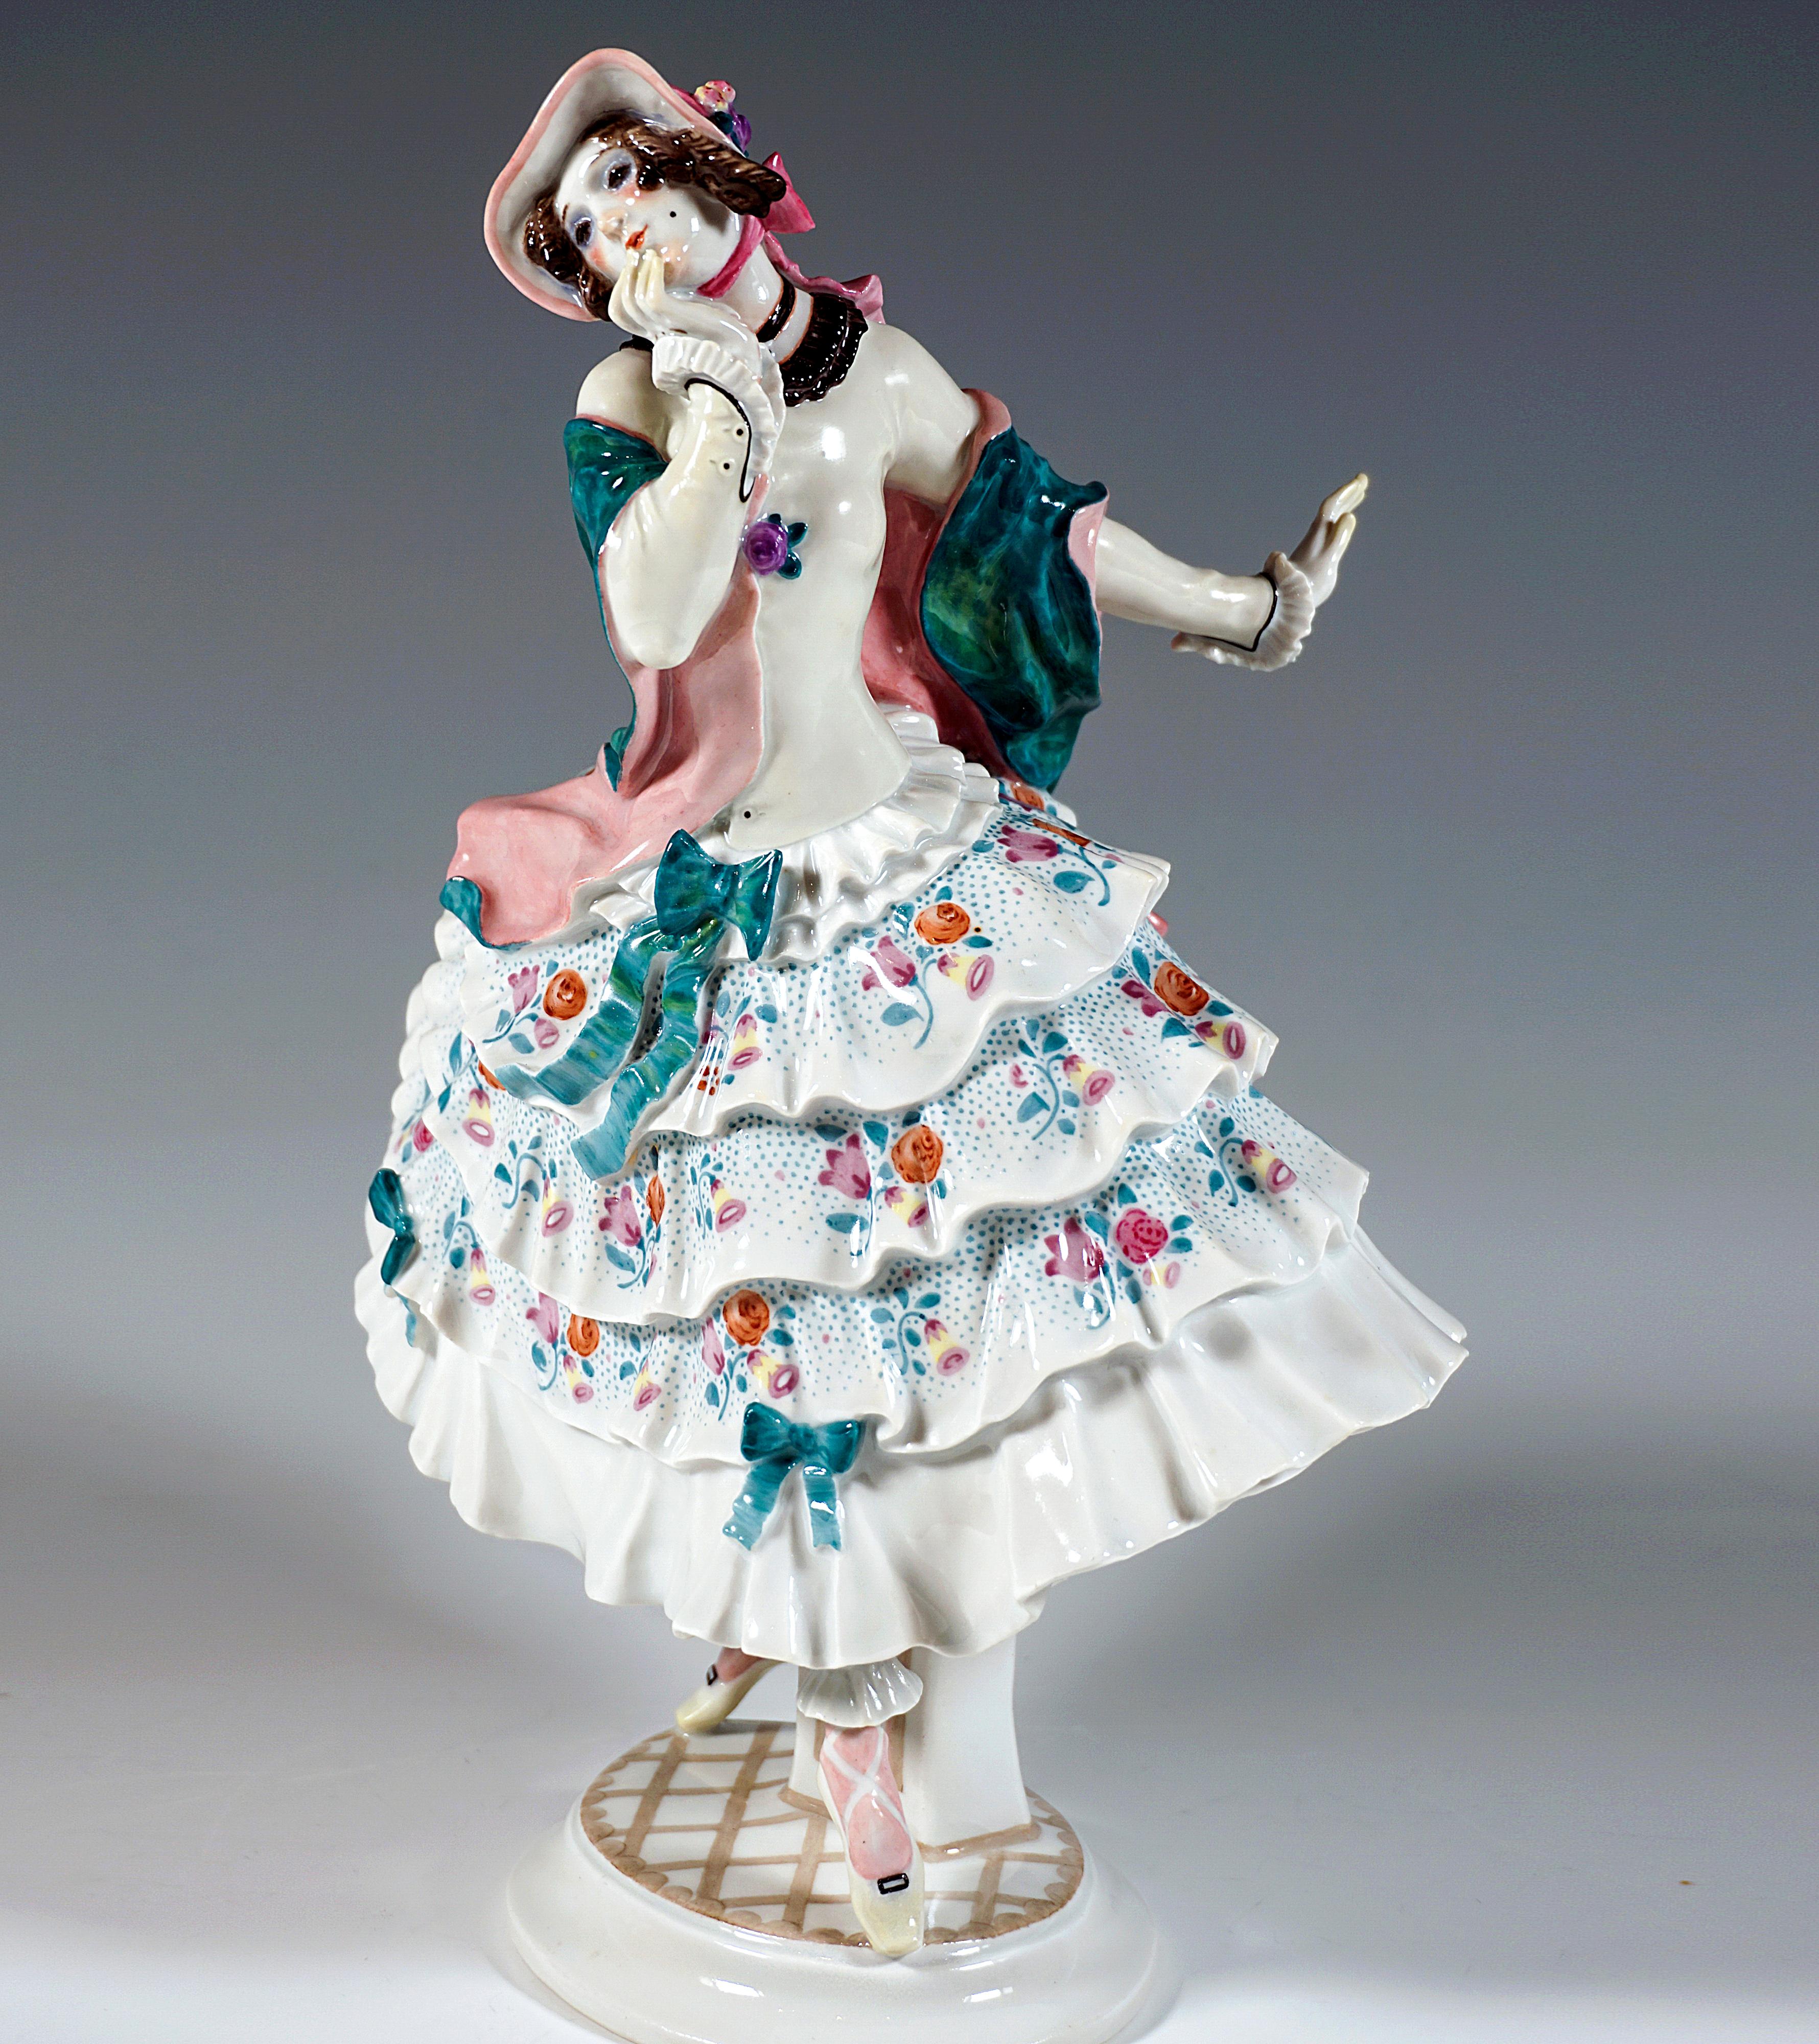 Figurine en porcelaine de Meissen :
Danseuse en équilibre sur ses orteils, tournant la tête vers la droite et portant indécisément sa main droite à son menton, tandis que de sa main gauche elle 
fait un geste défensif - feignant l'horreur face à la